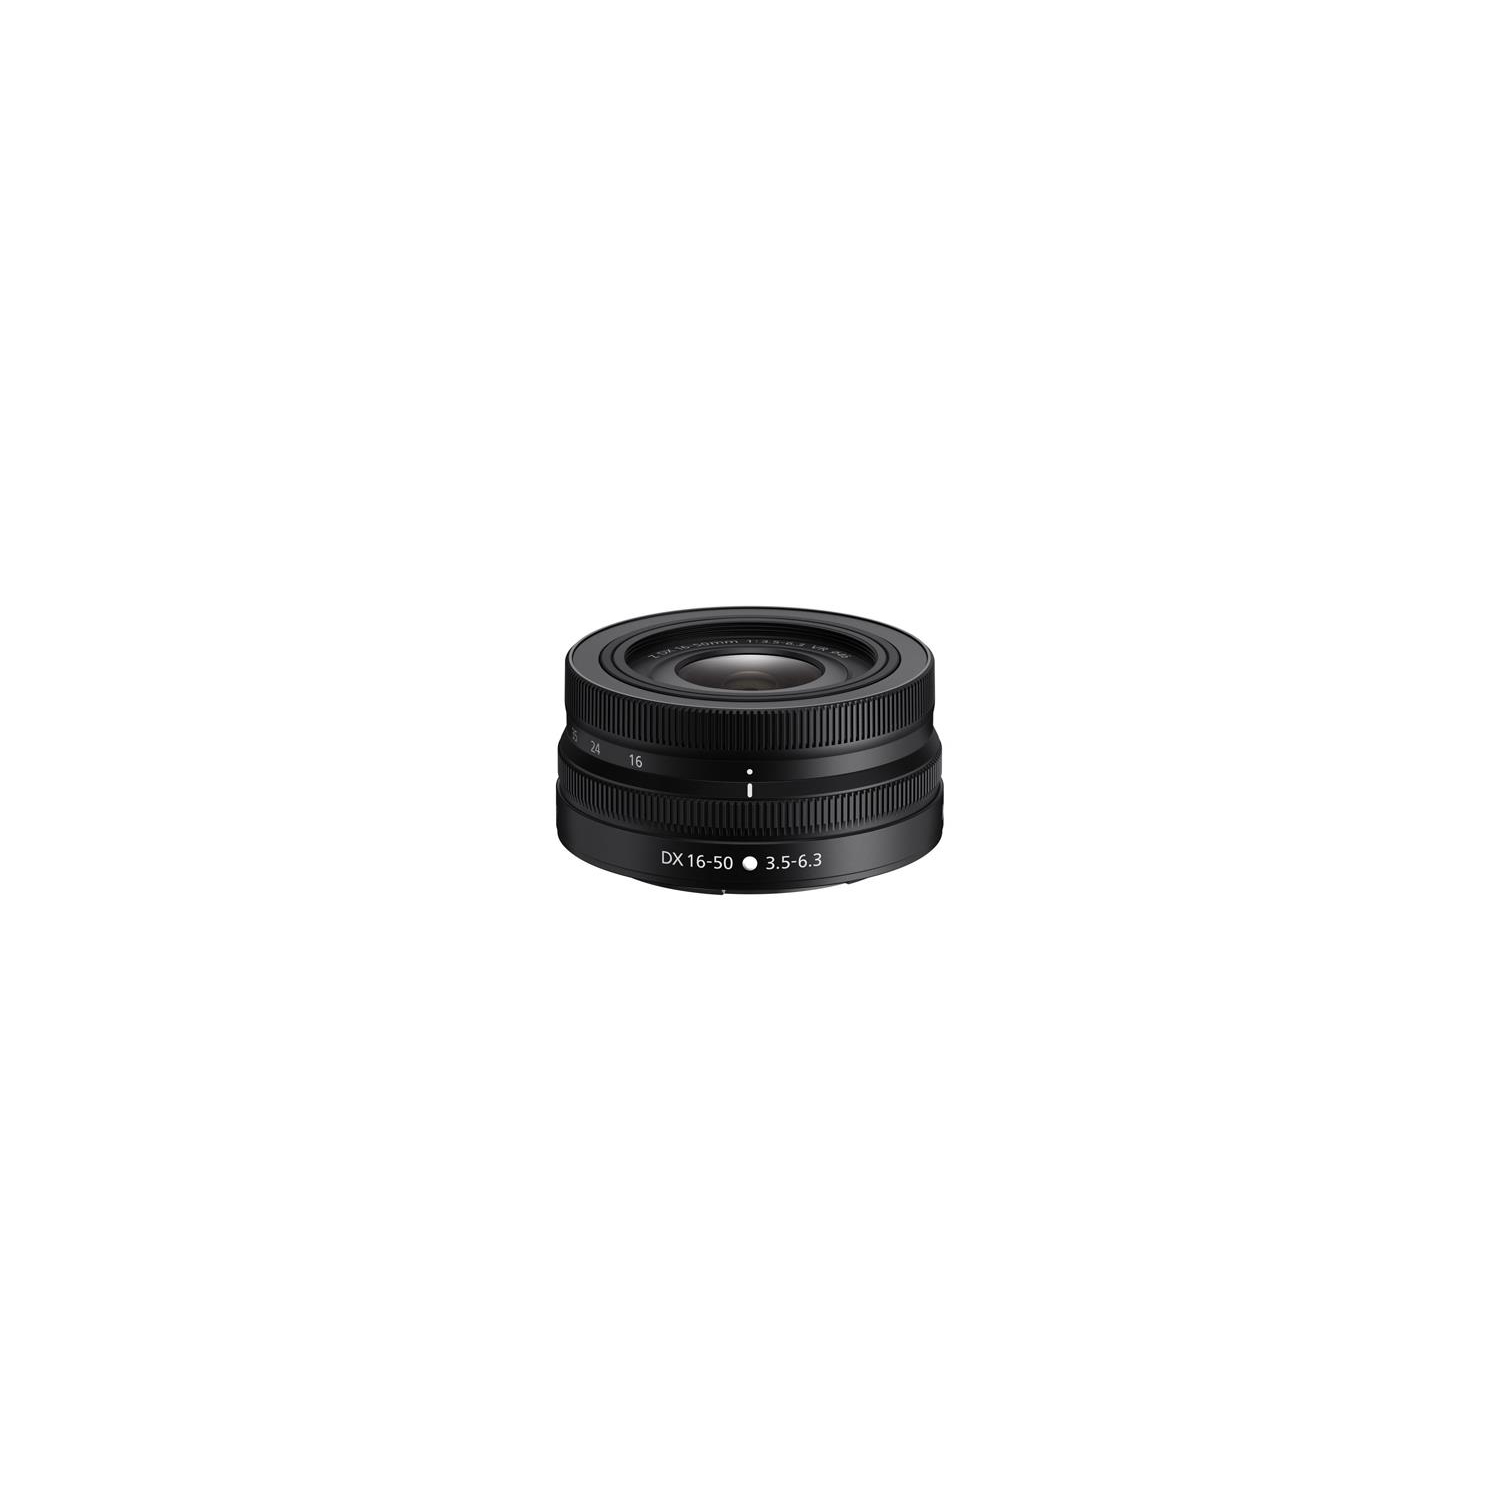 Nikon NIKKOR Z 16-50mm f3.5-6.3 VR DX Lens